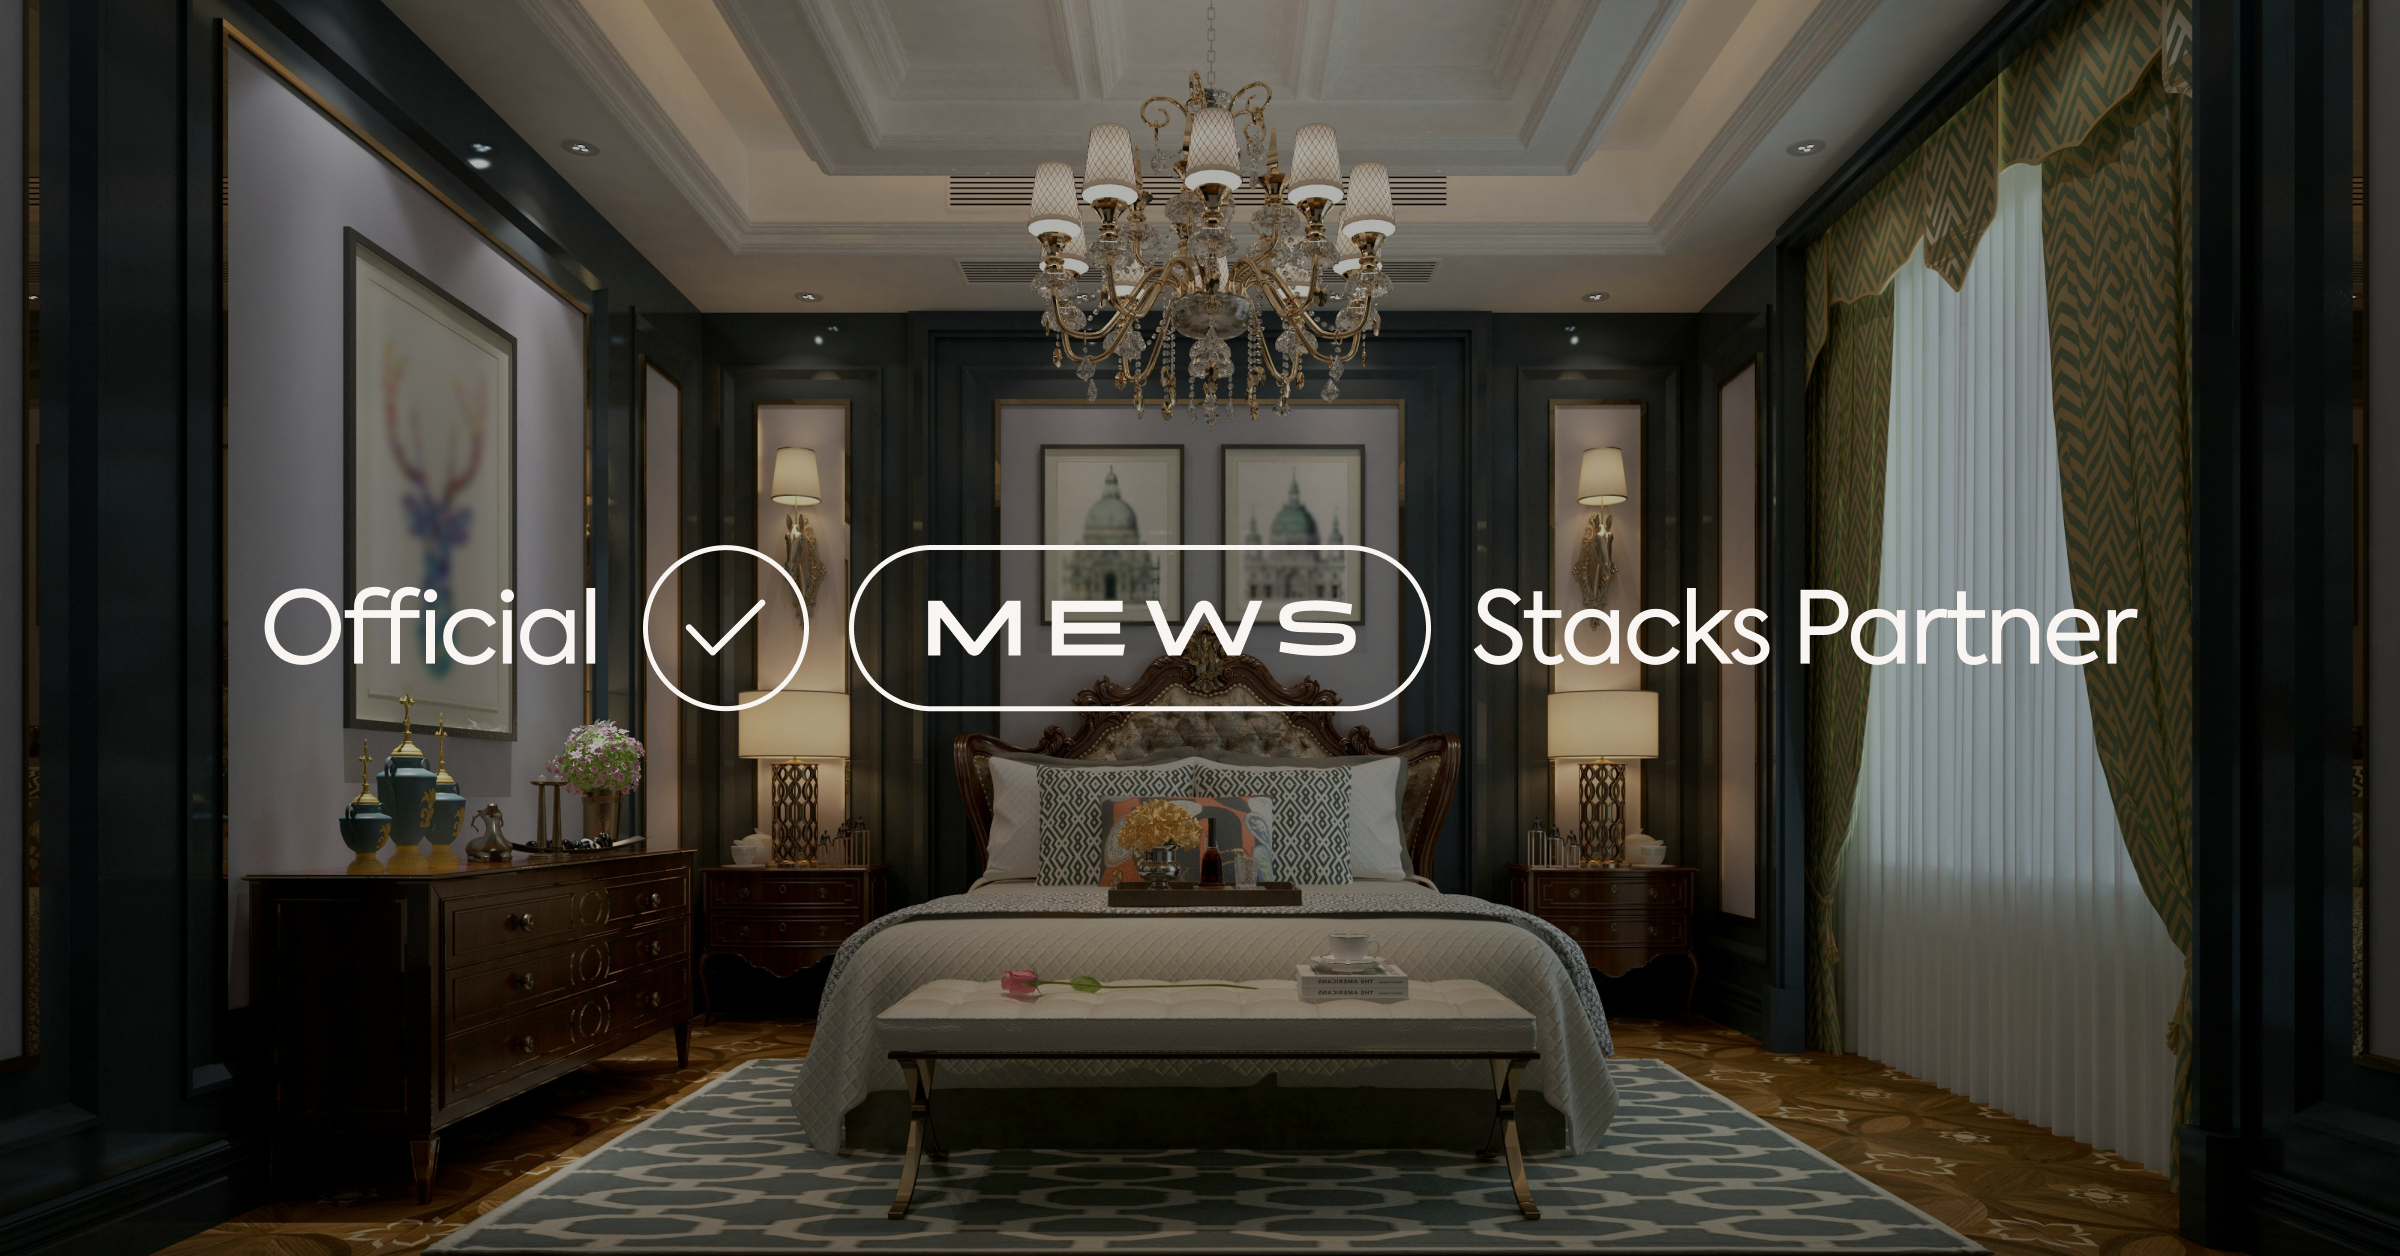 Mews Stacks Partner - hotel room v.2.png